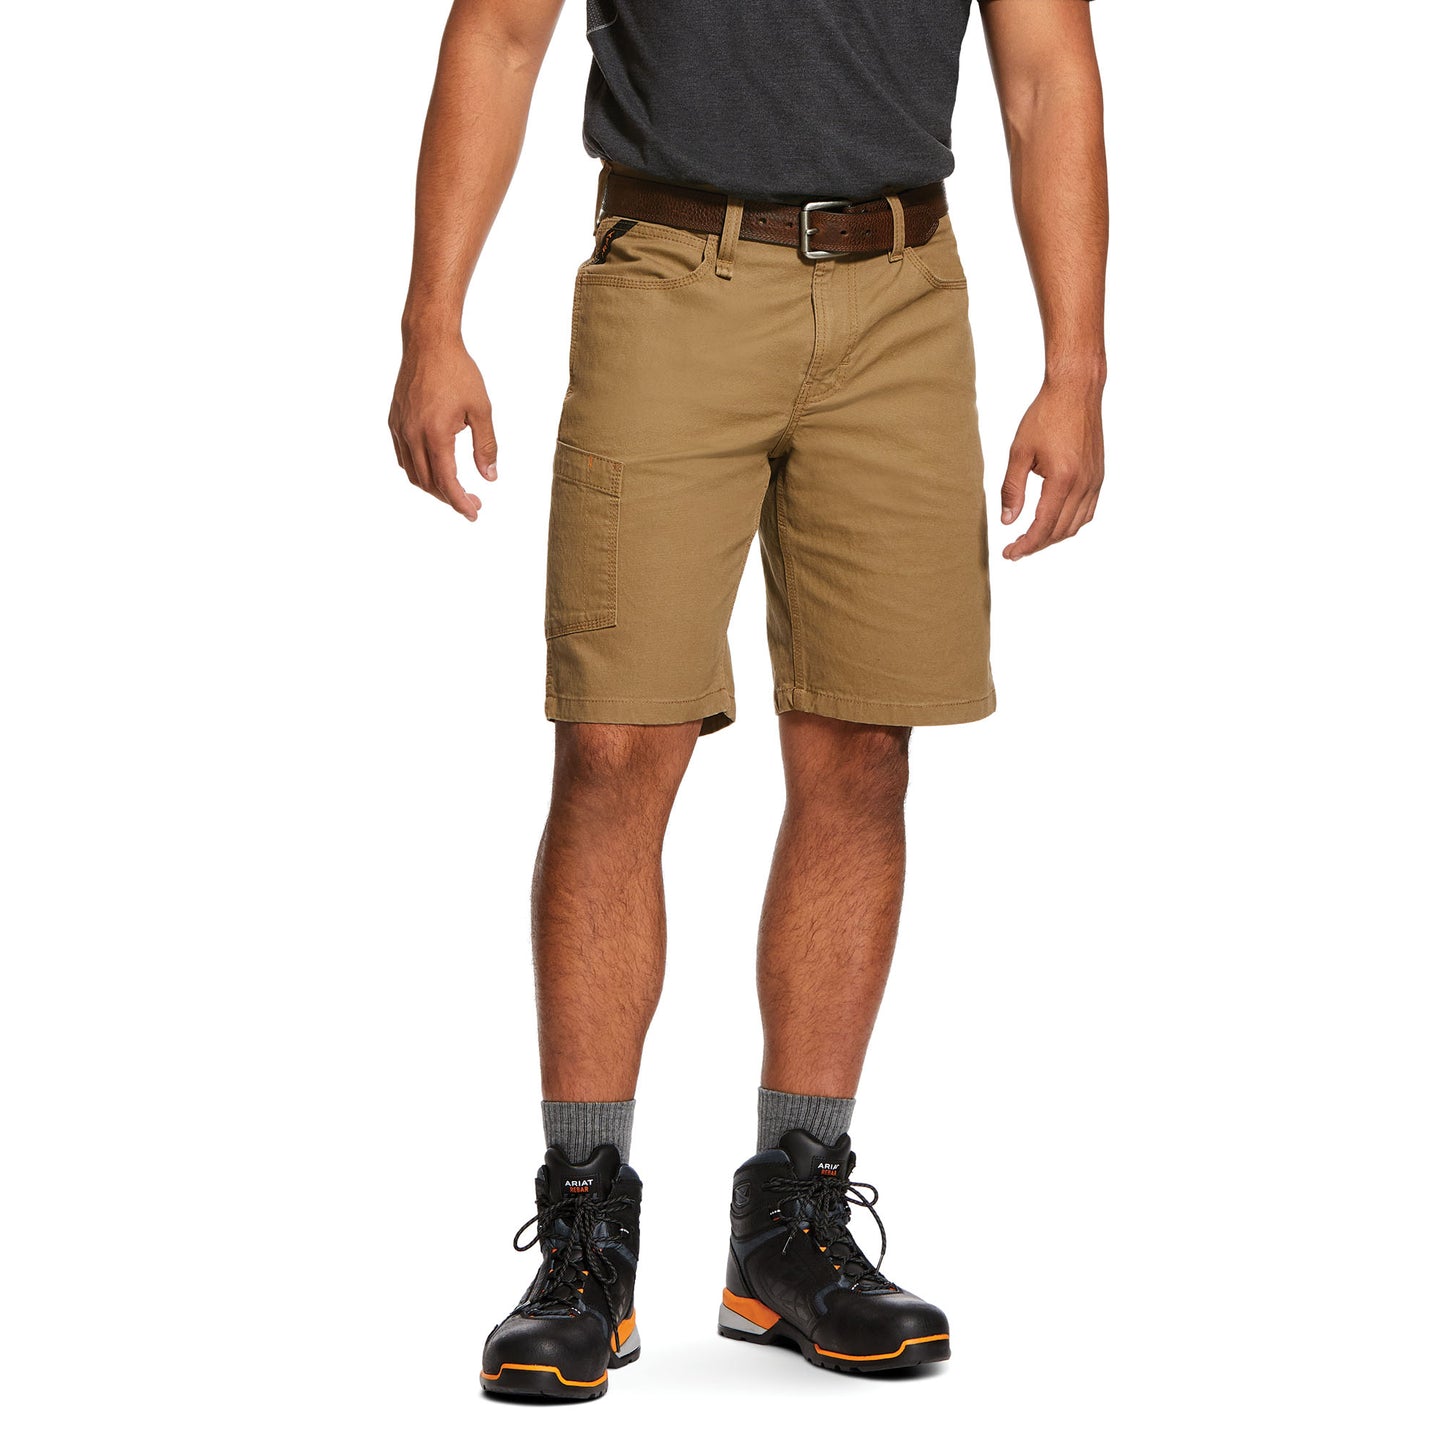 Men's Ariat Rebar DuraStretch Made Tough Shorts 10030265